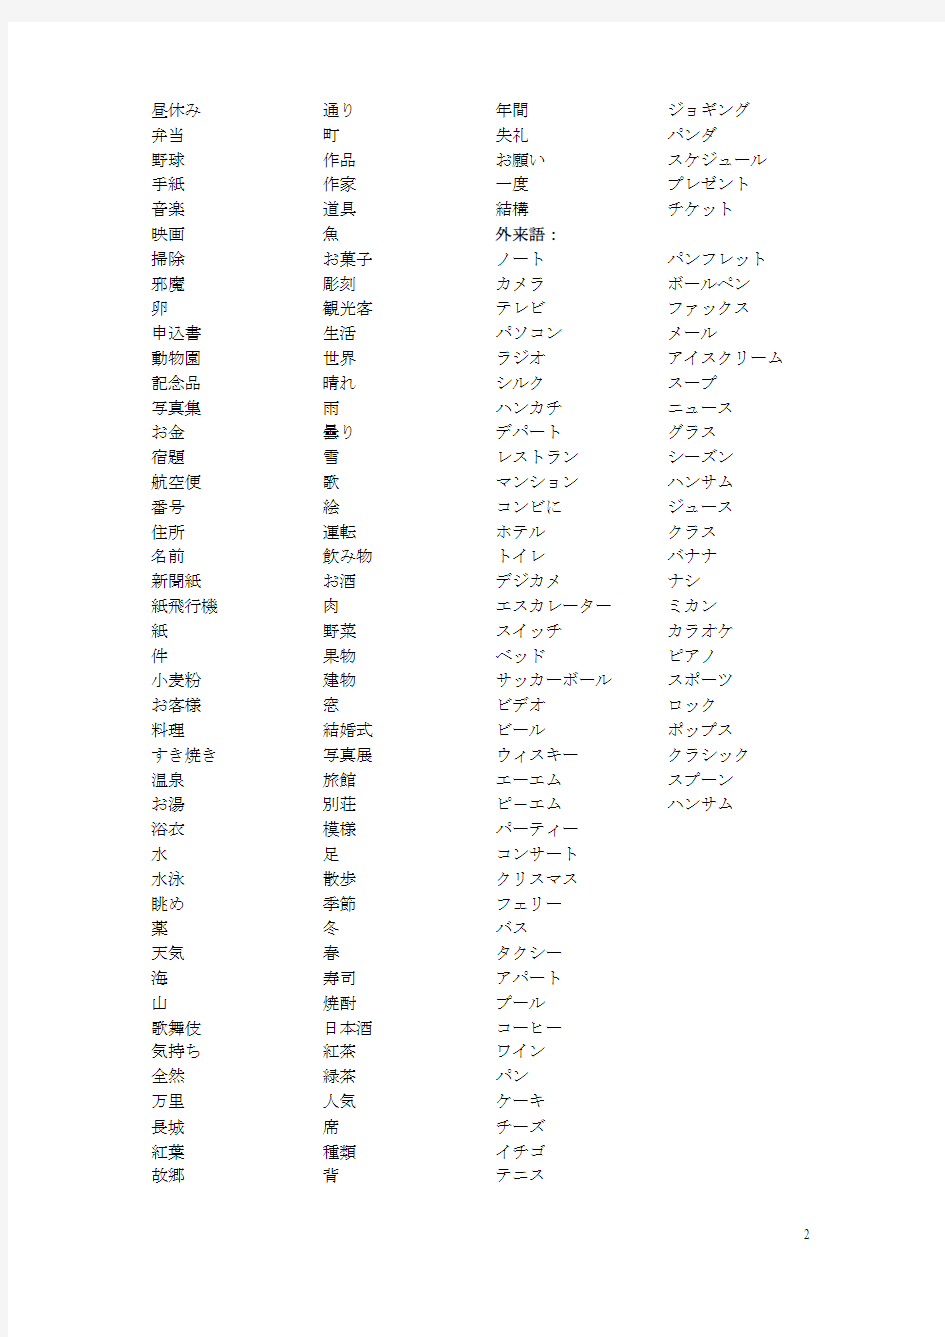 标准日本语1-12课单词